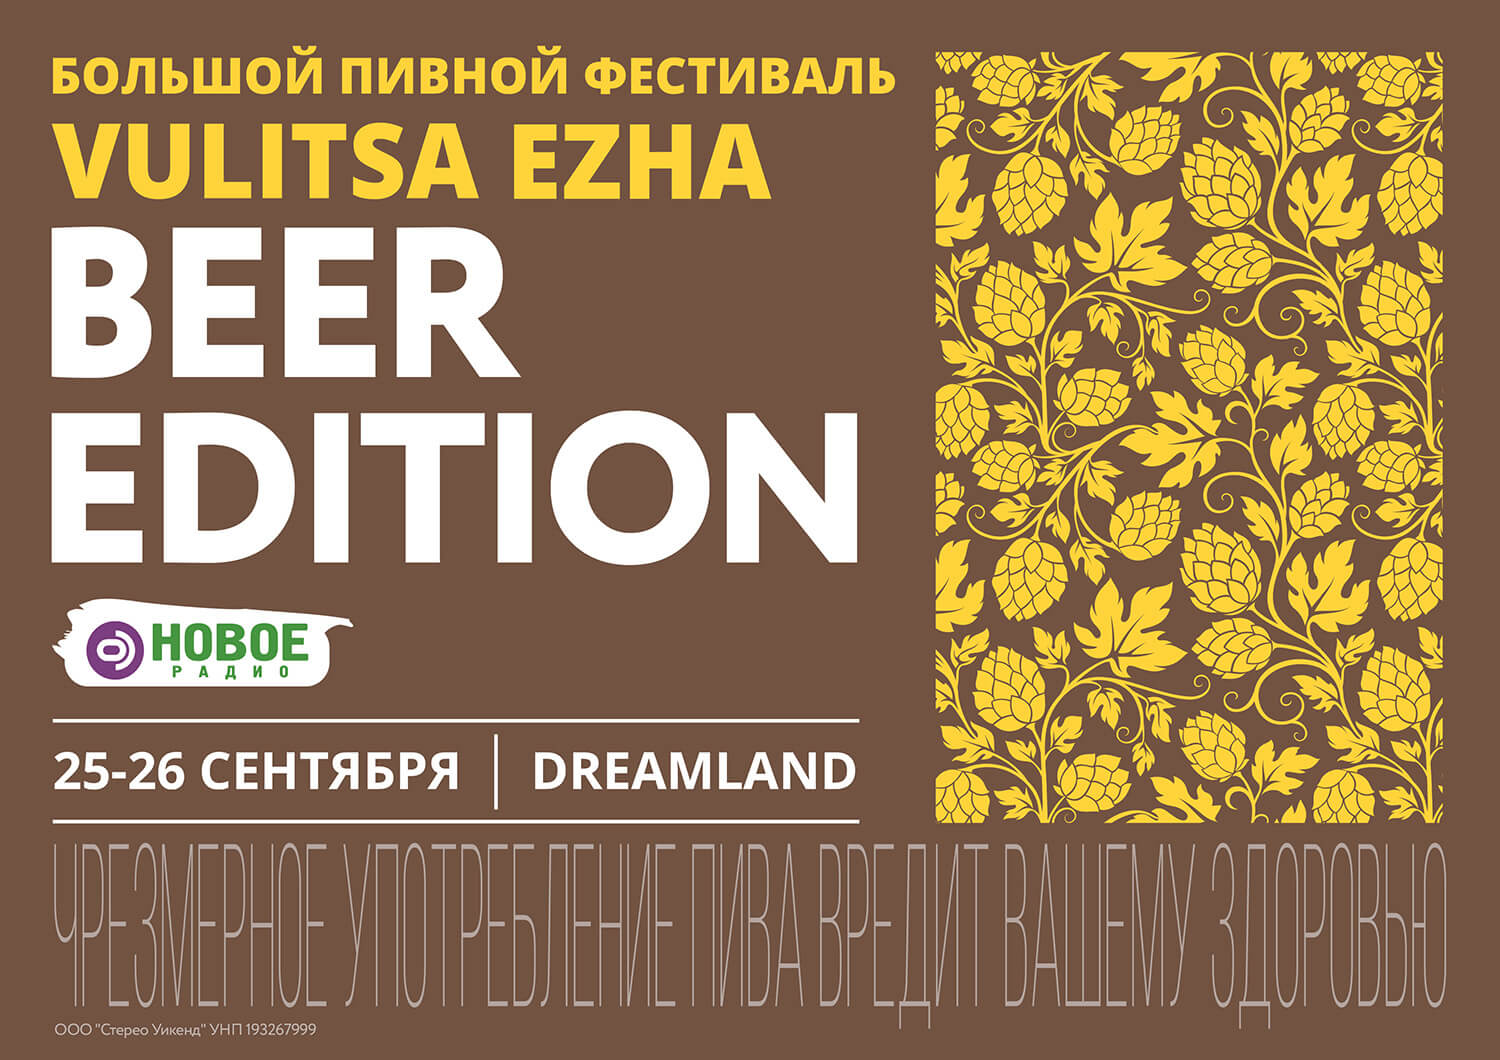 В Минске пройдёт фестиваль Vulitsa Ezha. Beer Edition